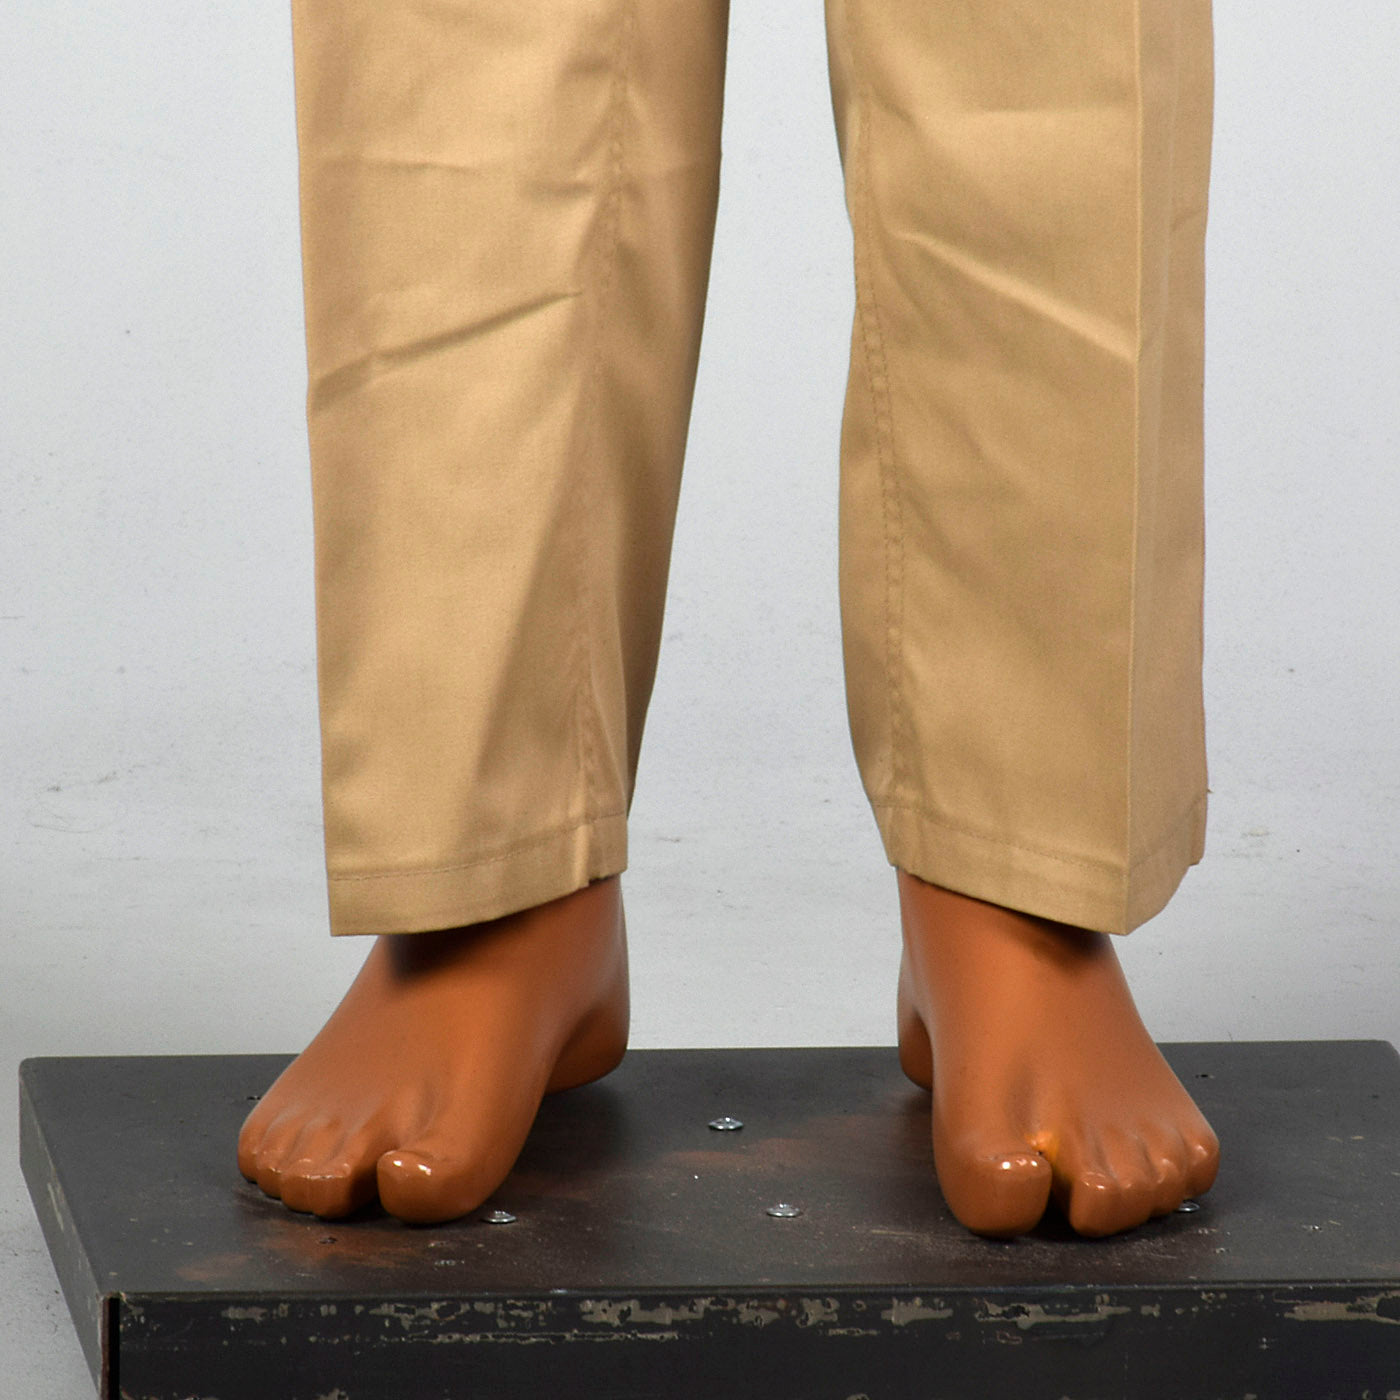 1980s Khaki Military Pants